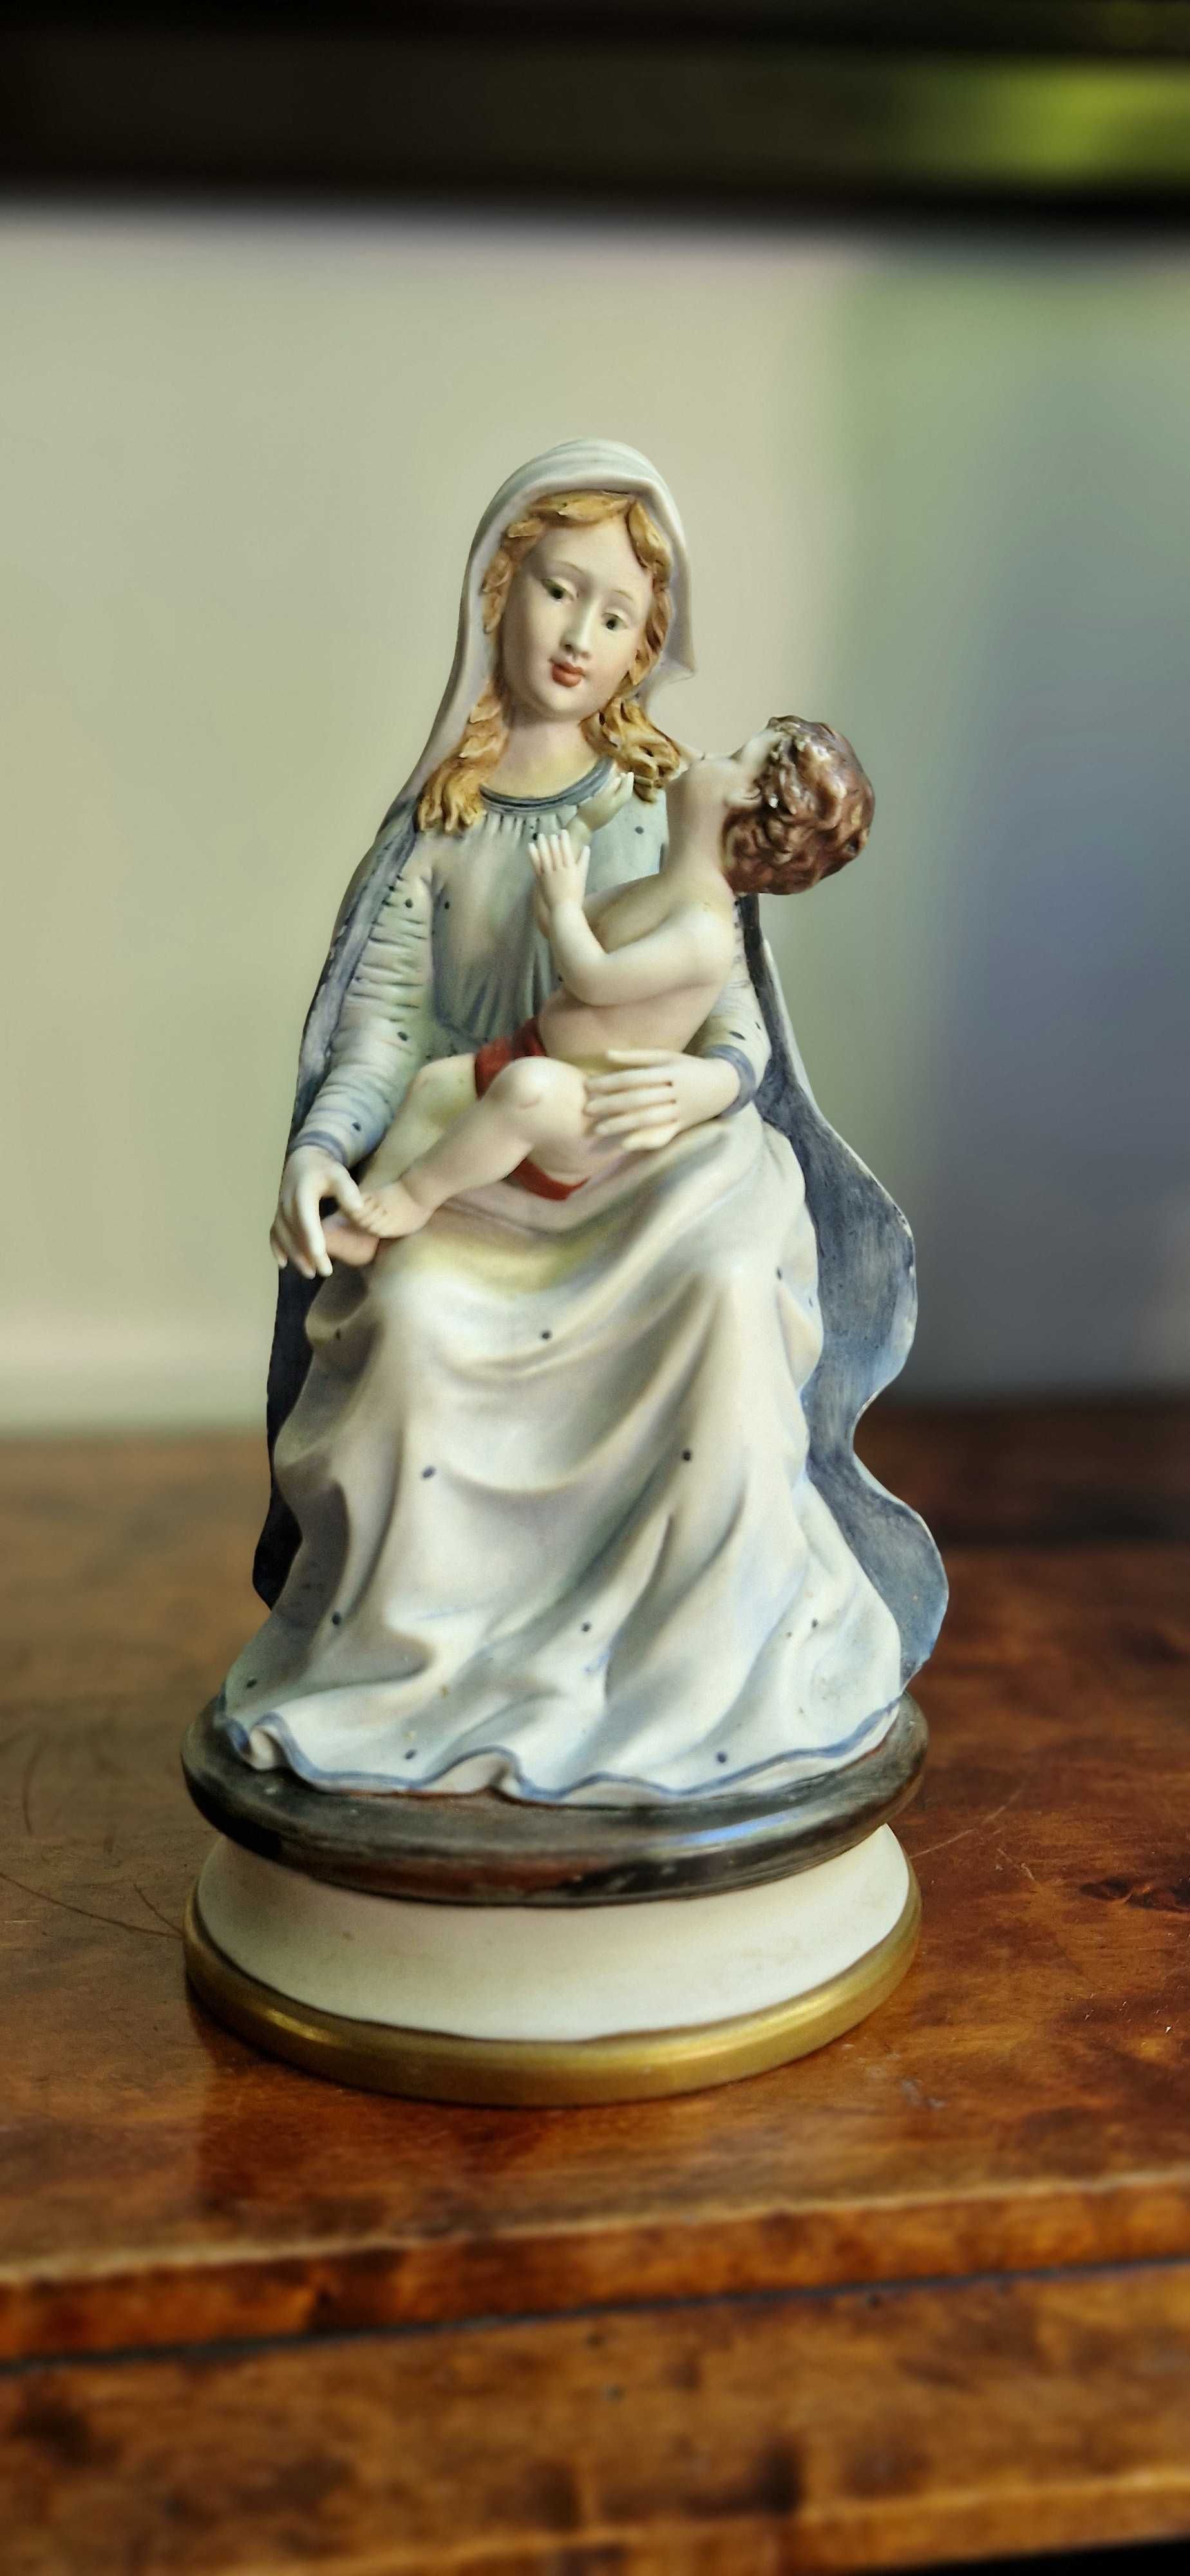 Aukcyjna rzezba Maryja Jezus porcelana biskwit Wlochy Giuseppe Armani